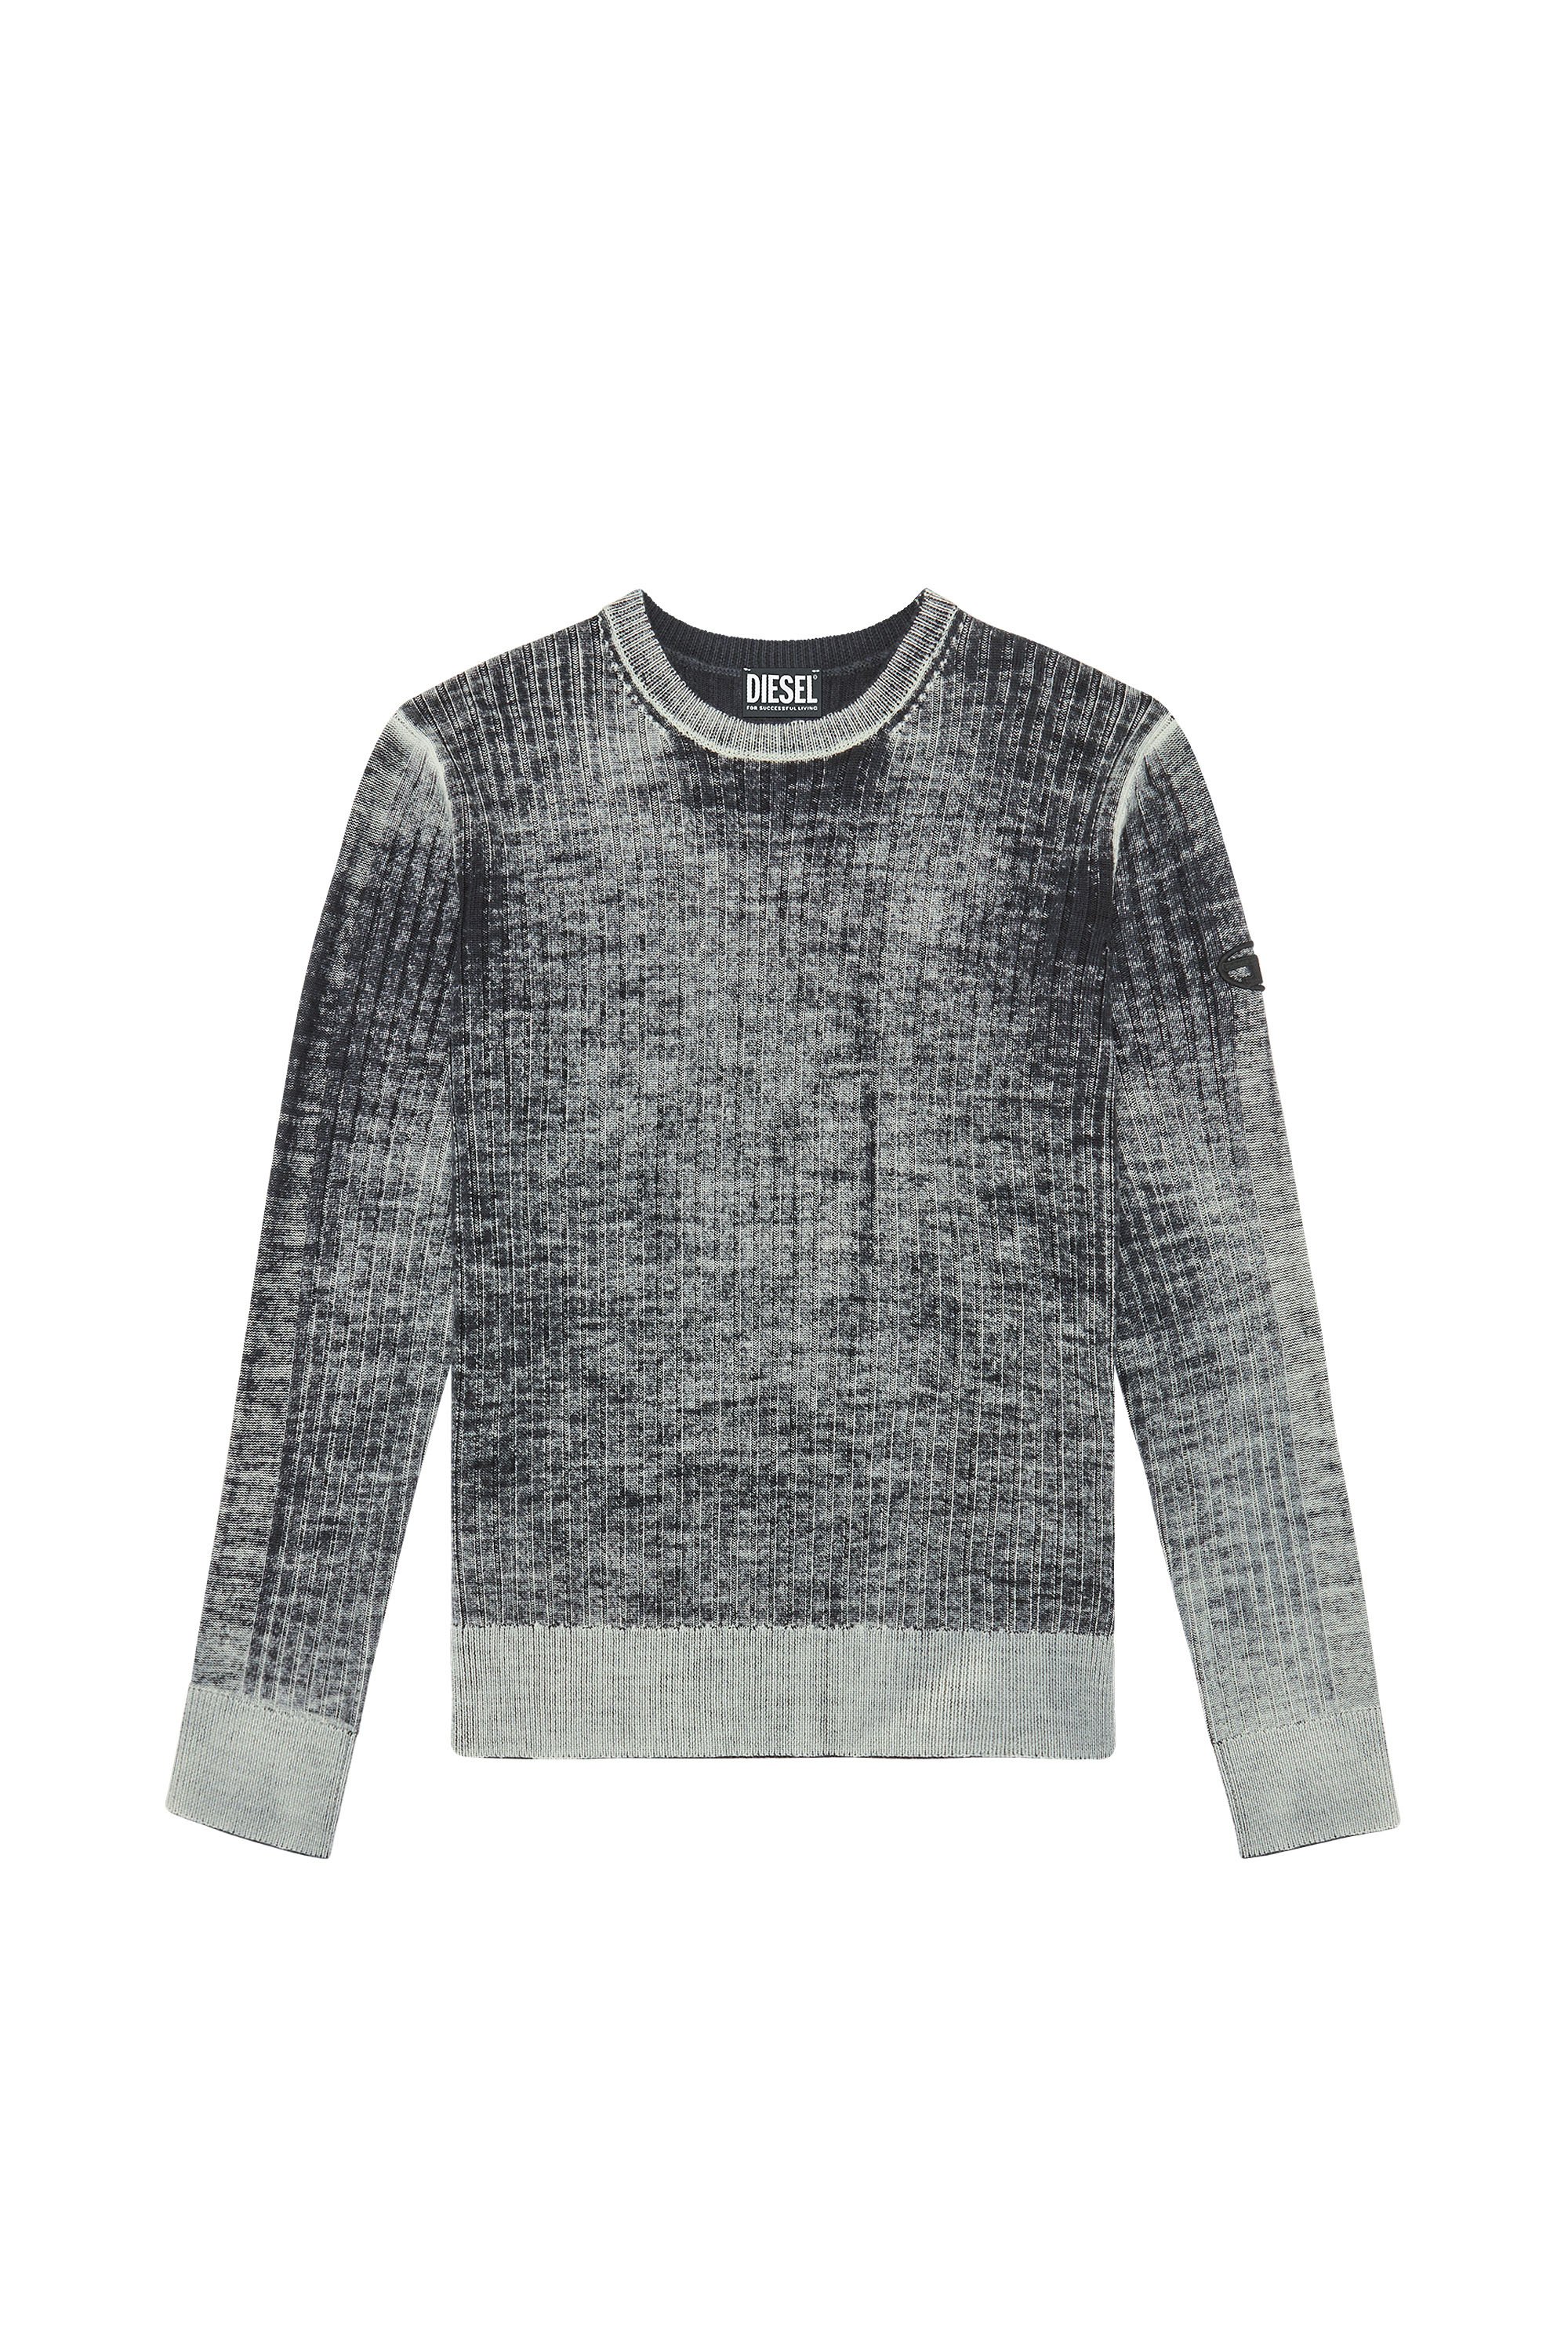 Diesel - K-ANDELERO, Man Printed wool jumper in Grey - Image 3